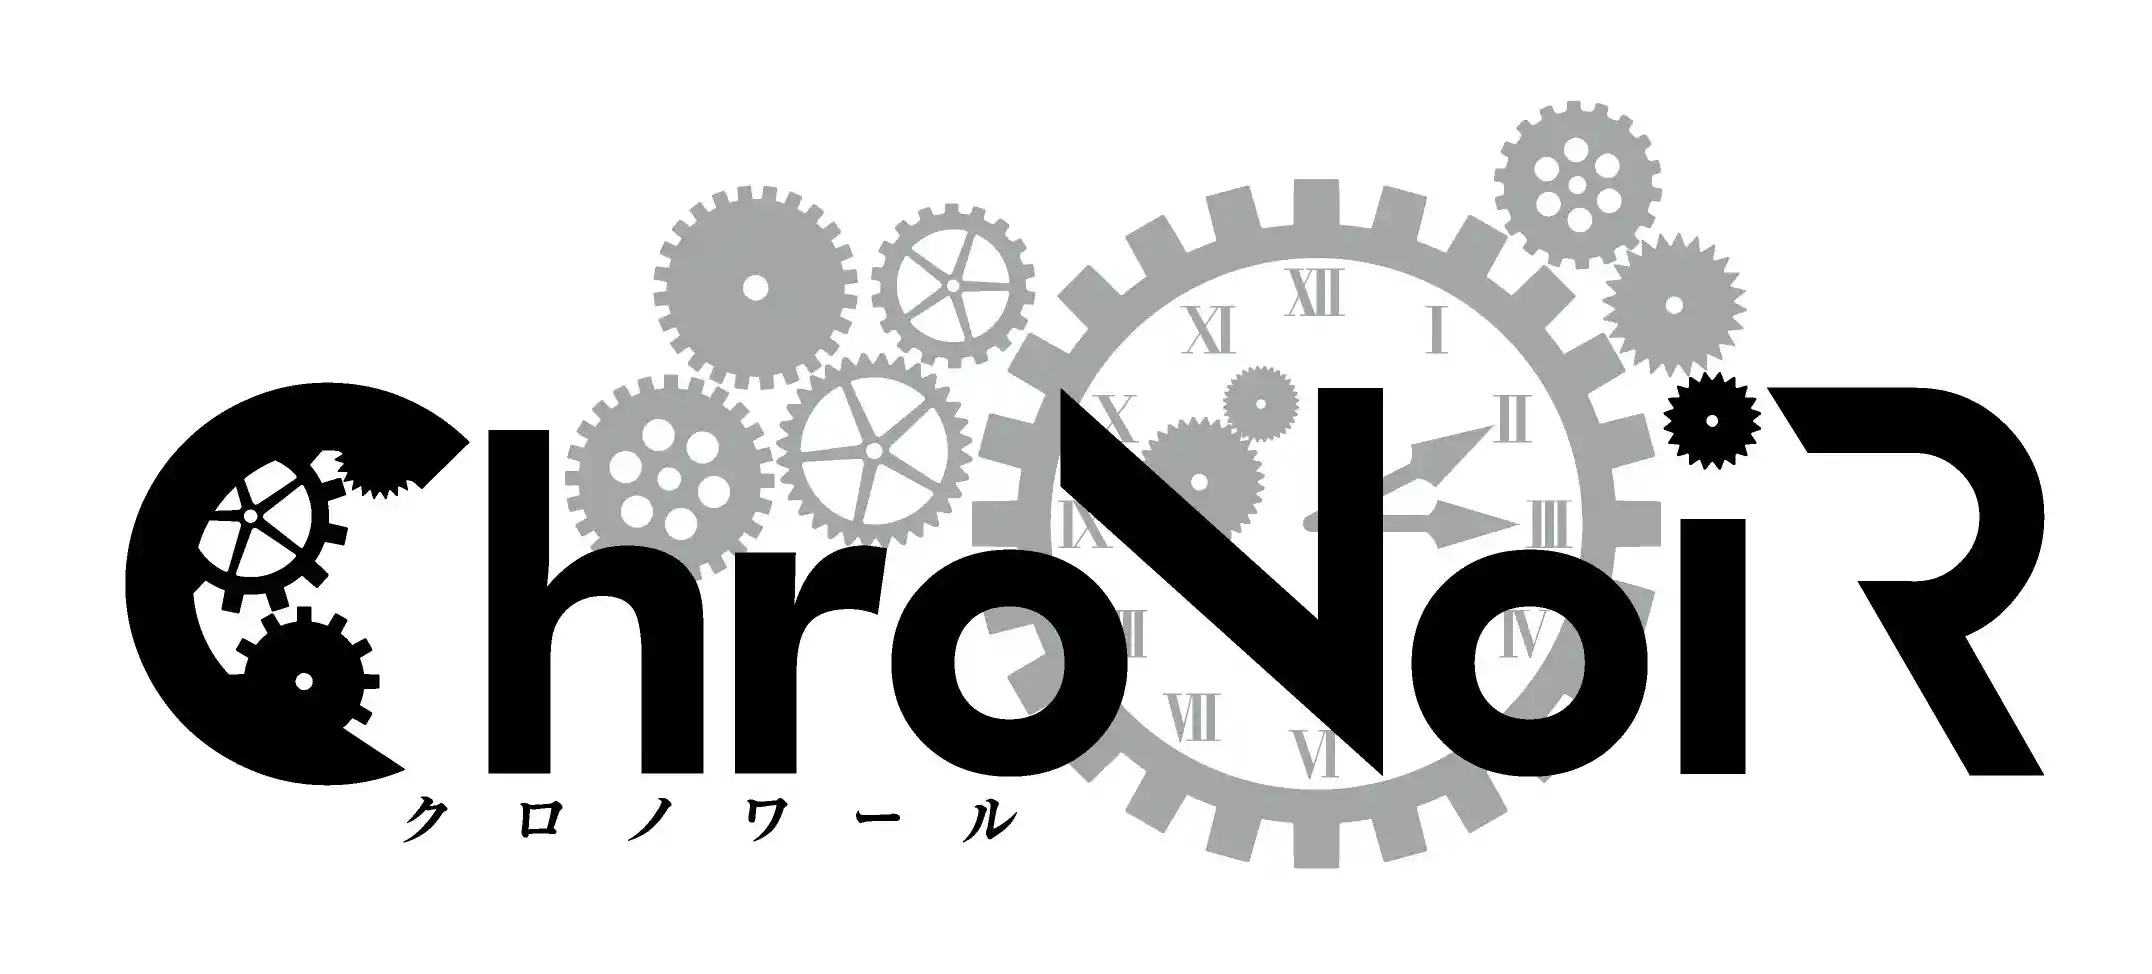 Logo_ChroNoiR_1.png